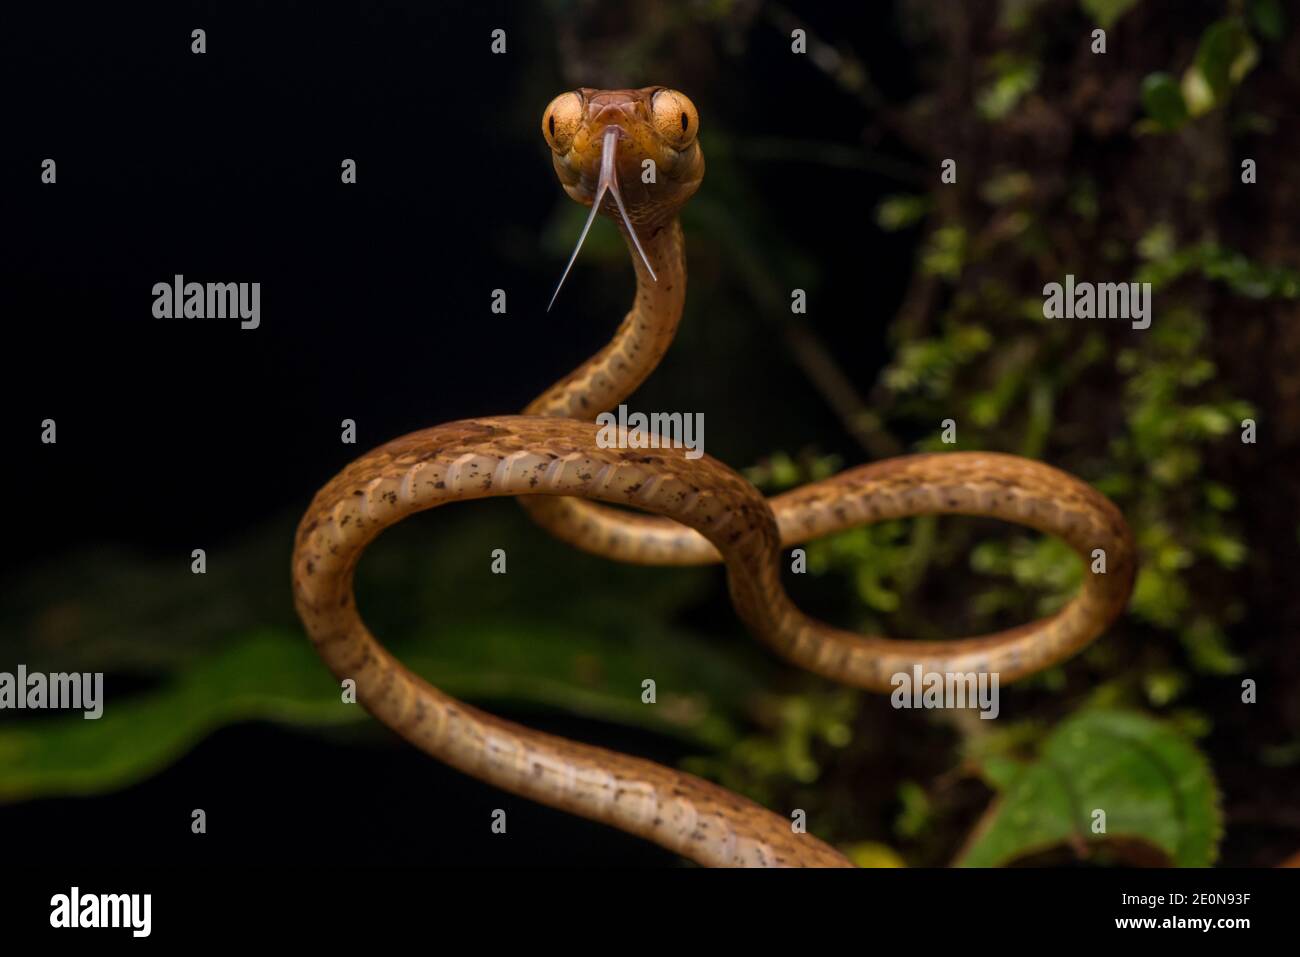 Eine gelbe, stumpfe Baumschlange (Imantodes inornatus) mit Blick auf die Kamera zeigt ihre komisch riesigen Augen - gut angepasst an ihre nächtlichen Gewohnheiten. Stockfoto